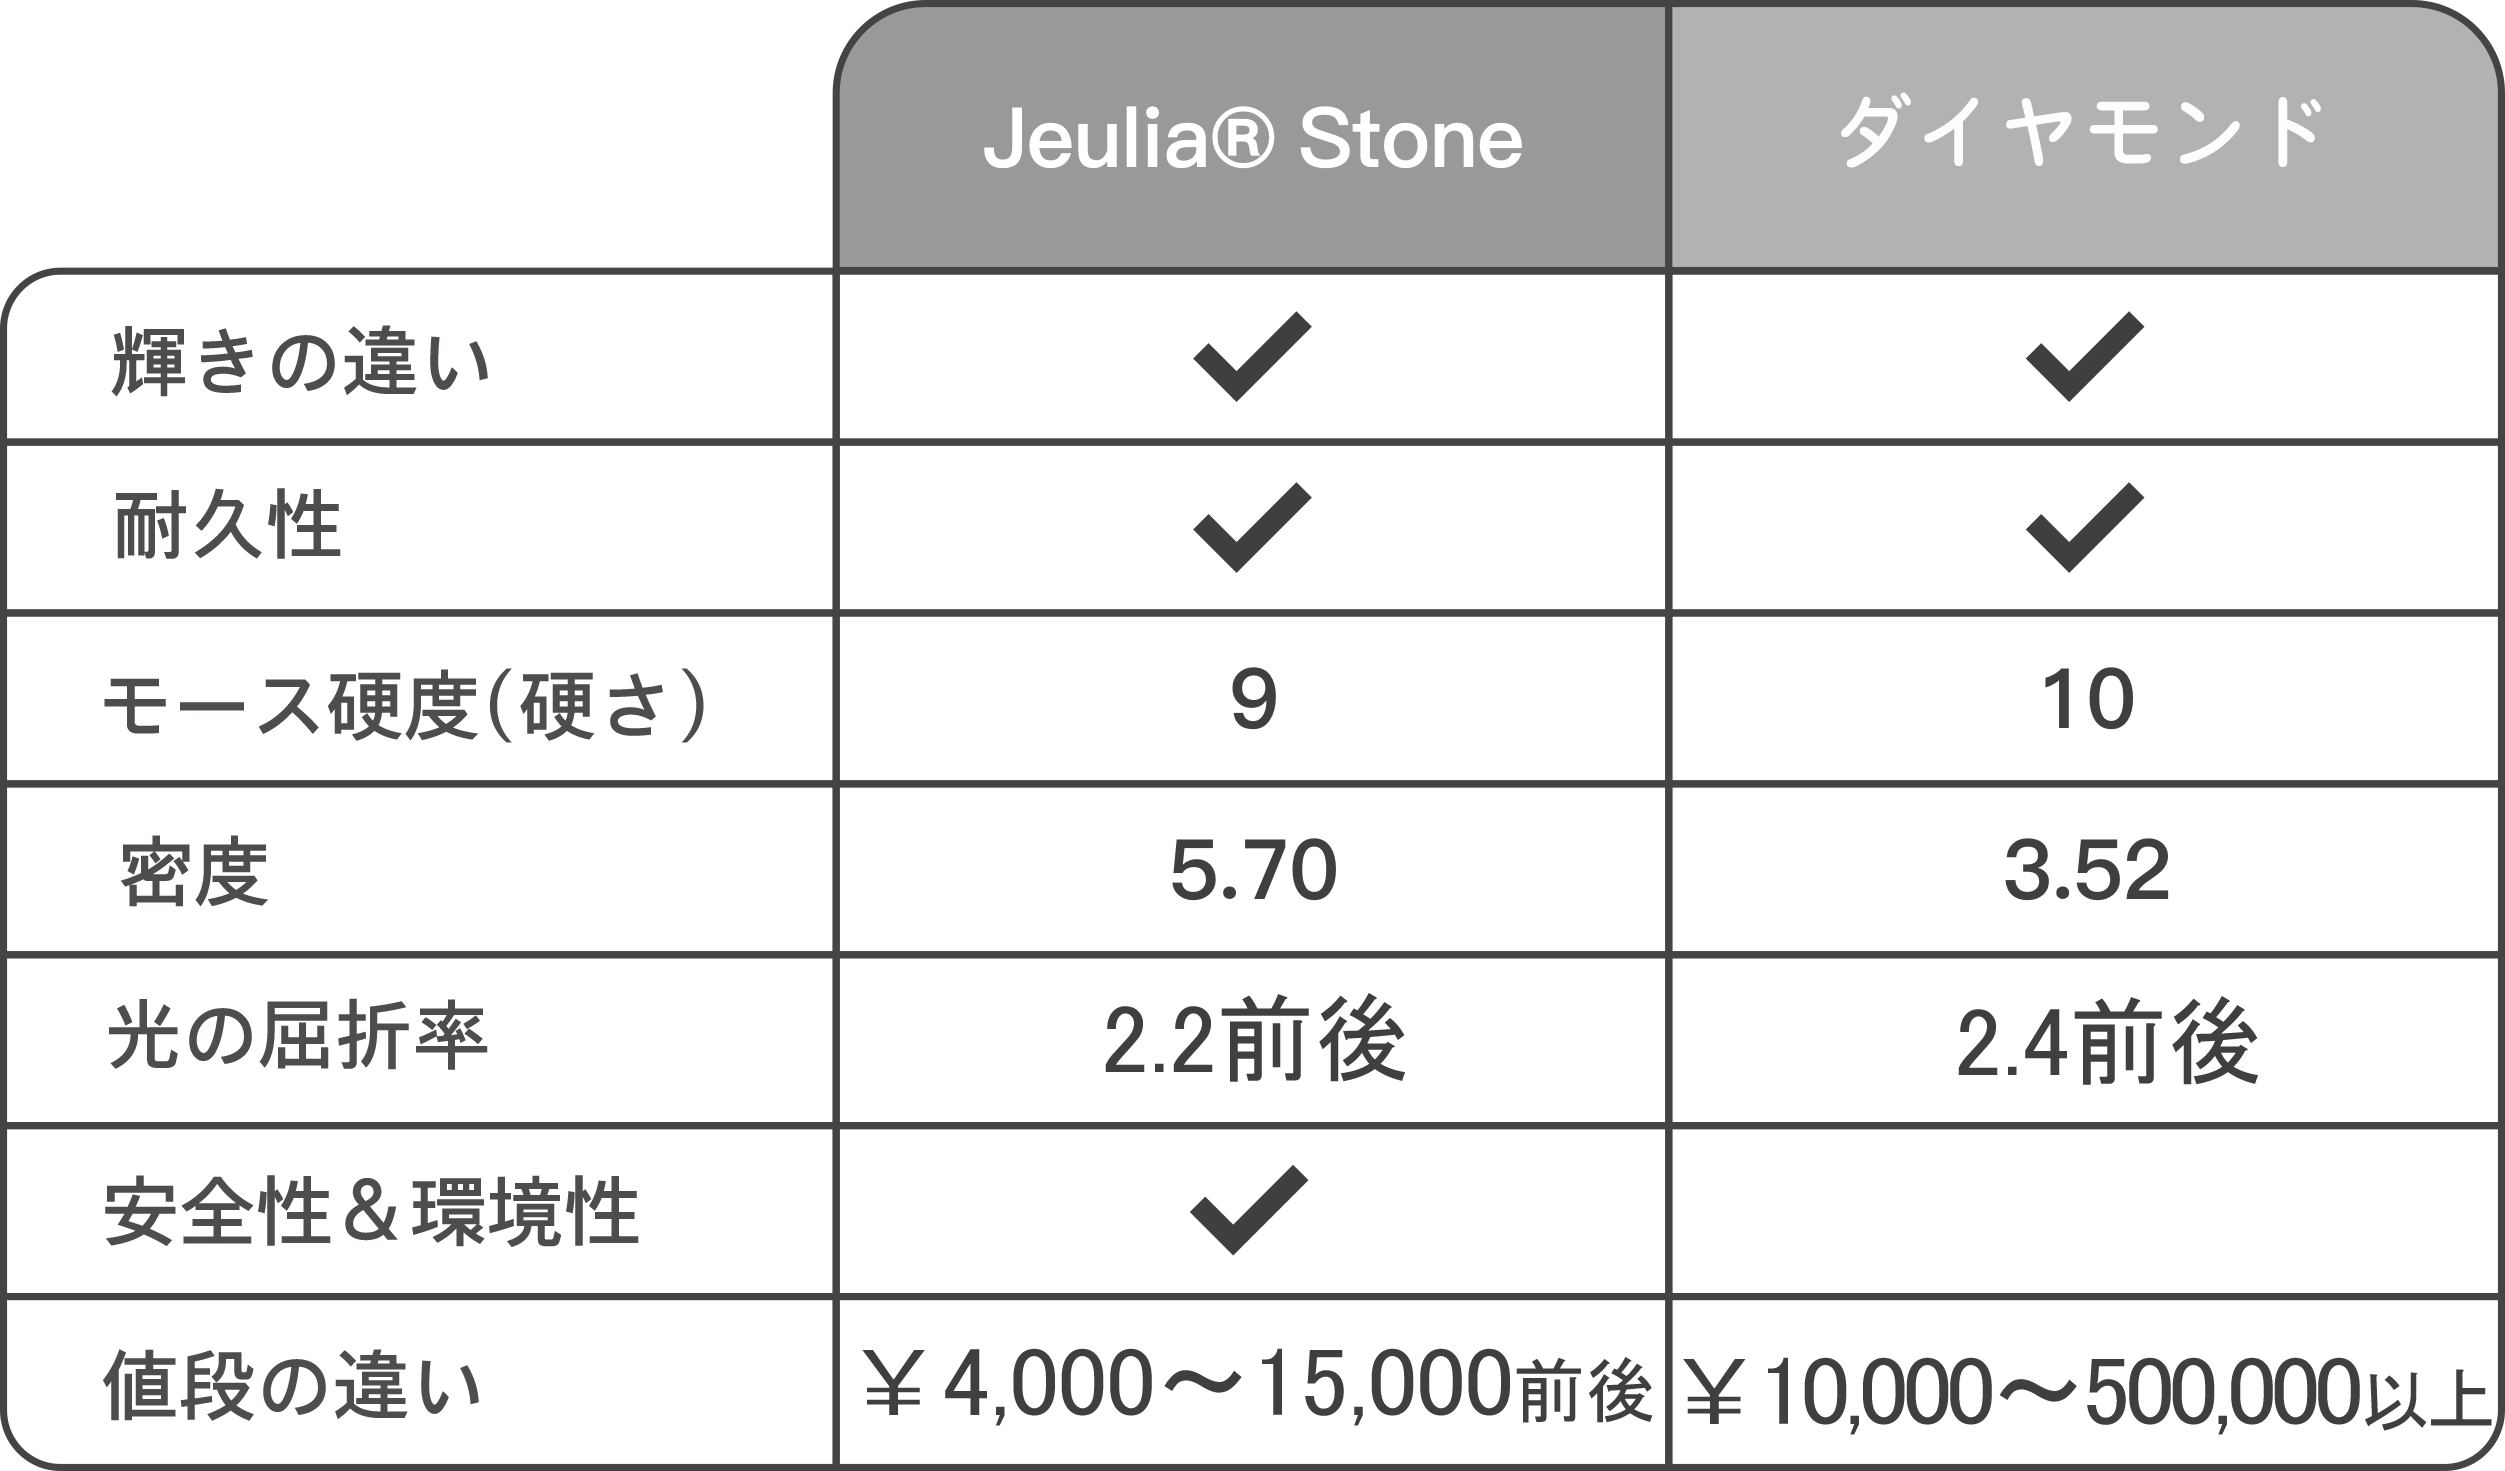 jeulia stone